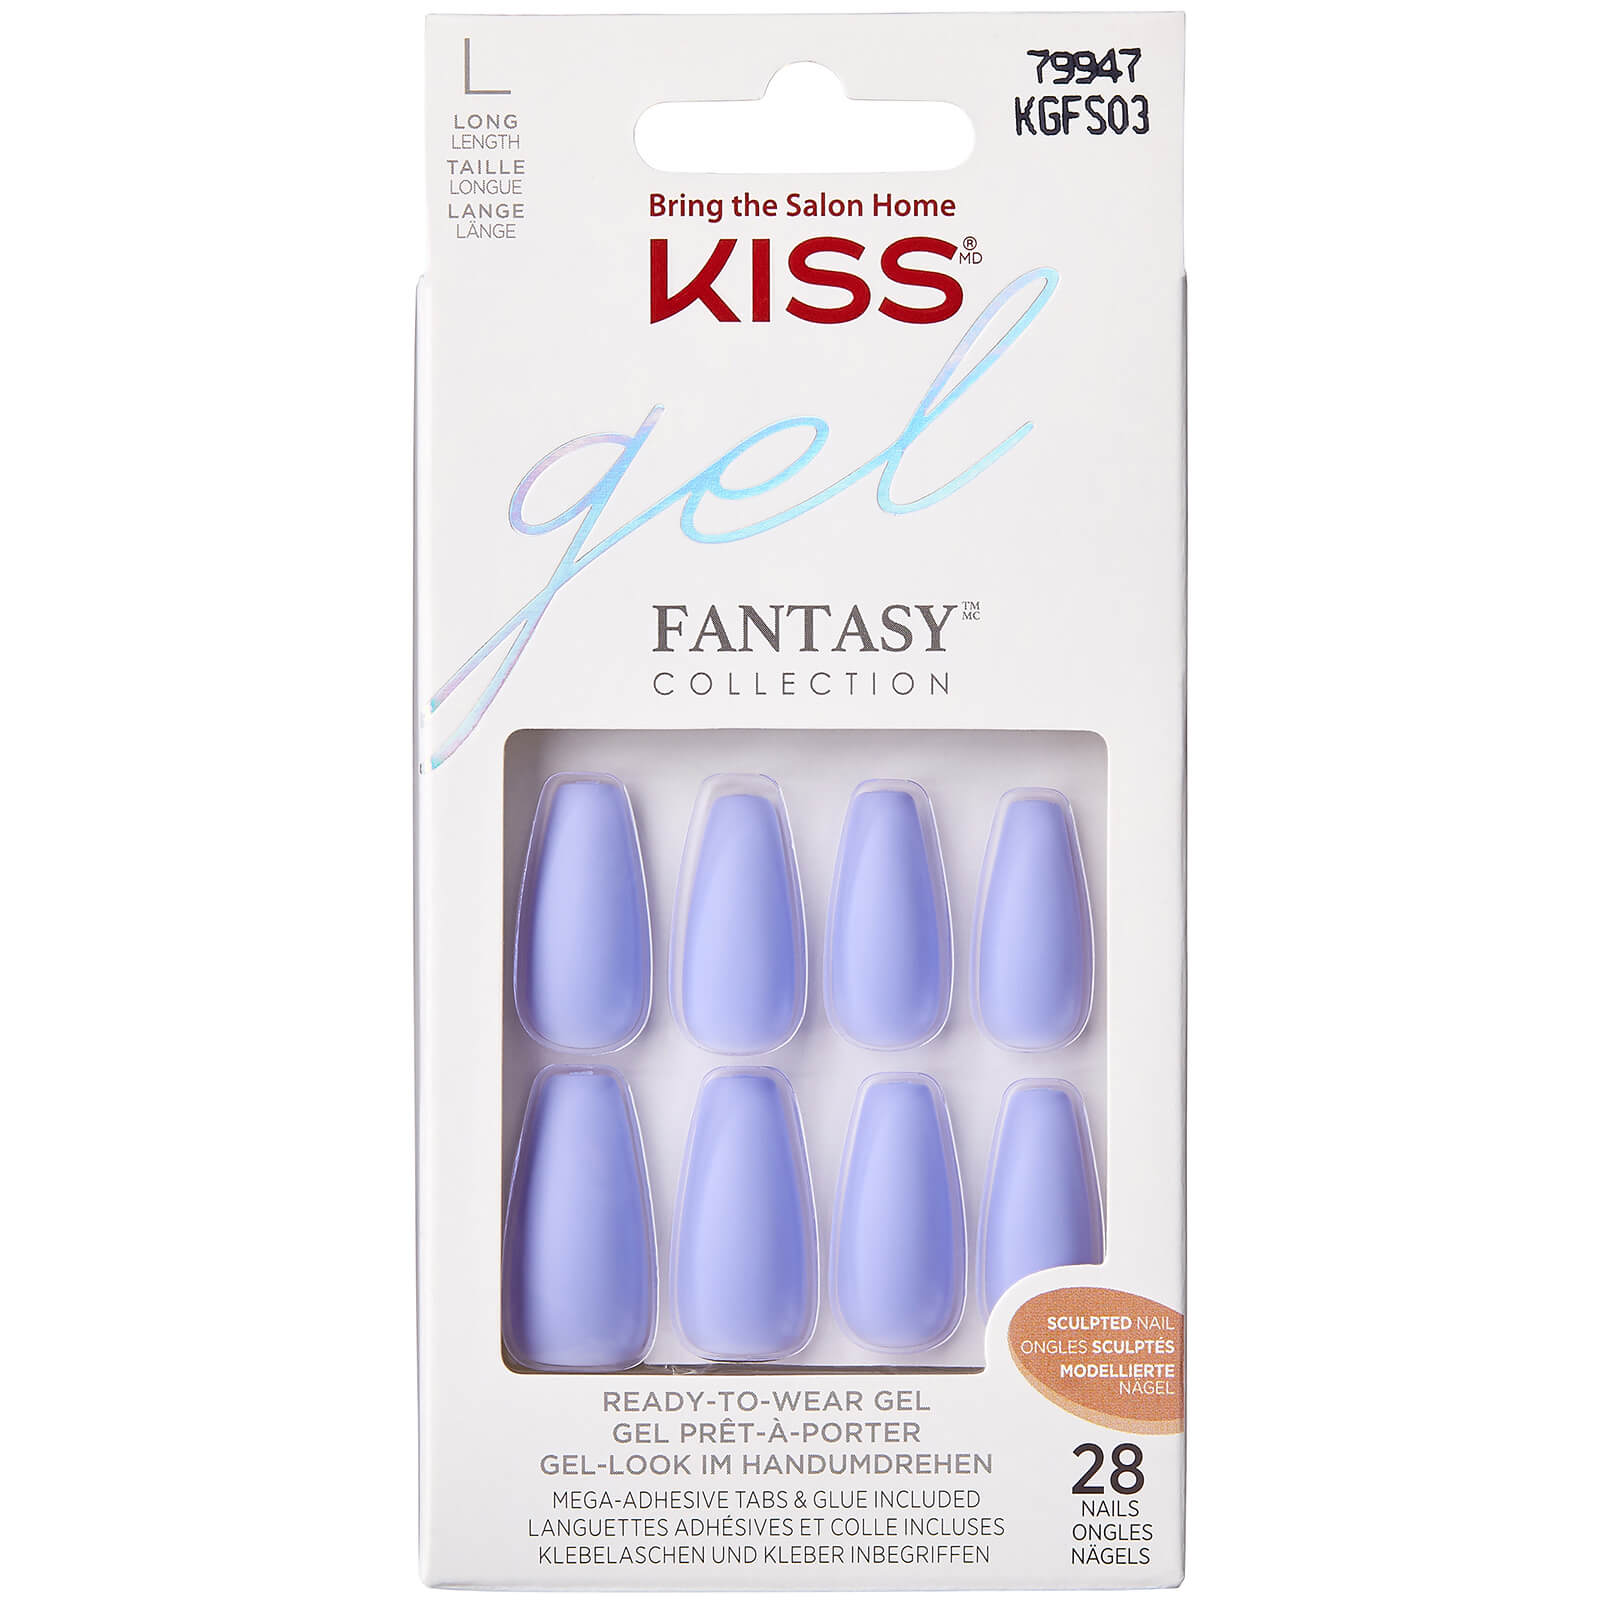 KISS Gel Fantasy Sculpted Nails (Various Shades) - Night After